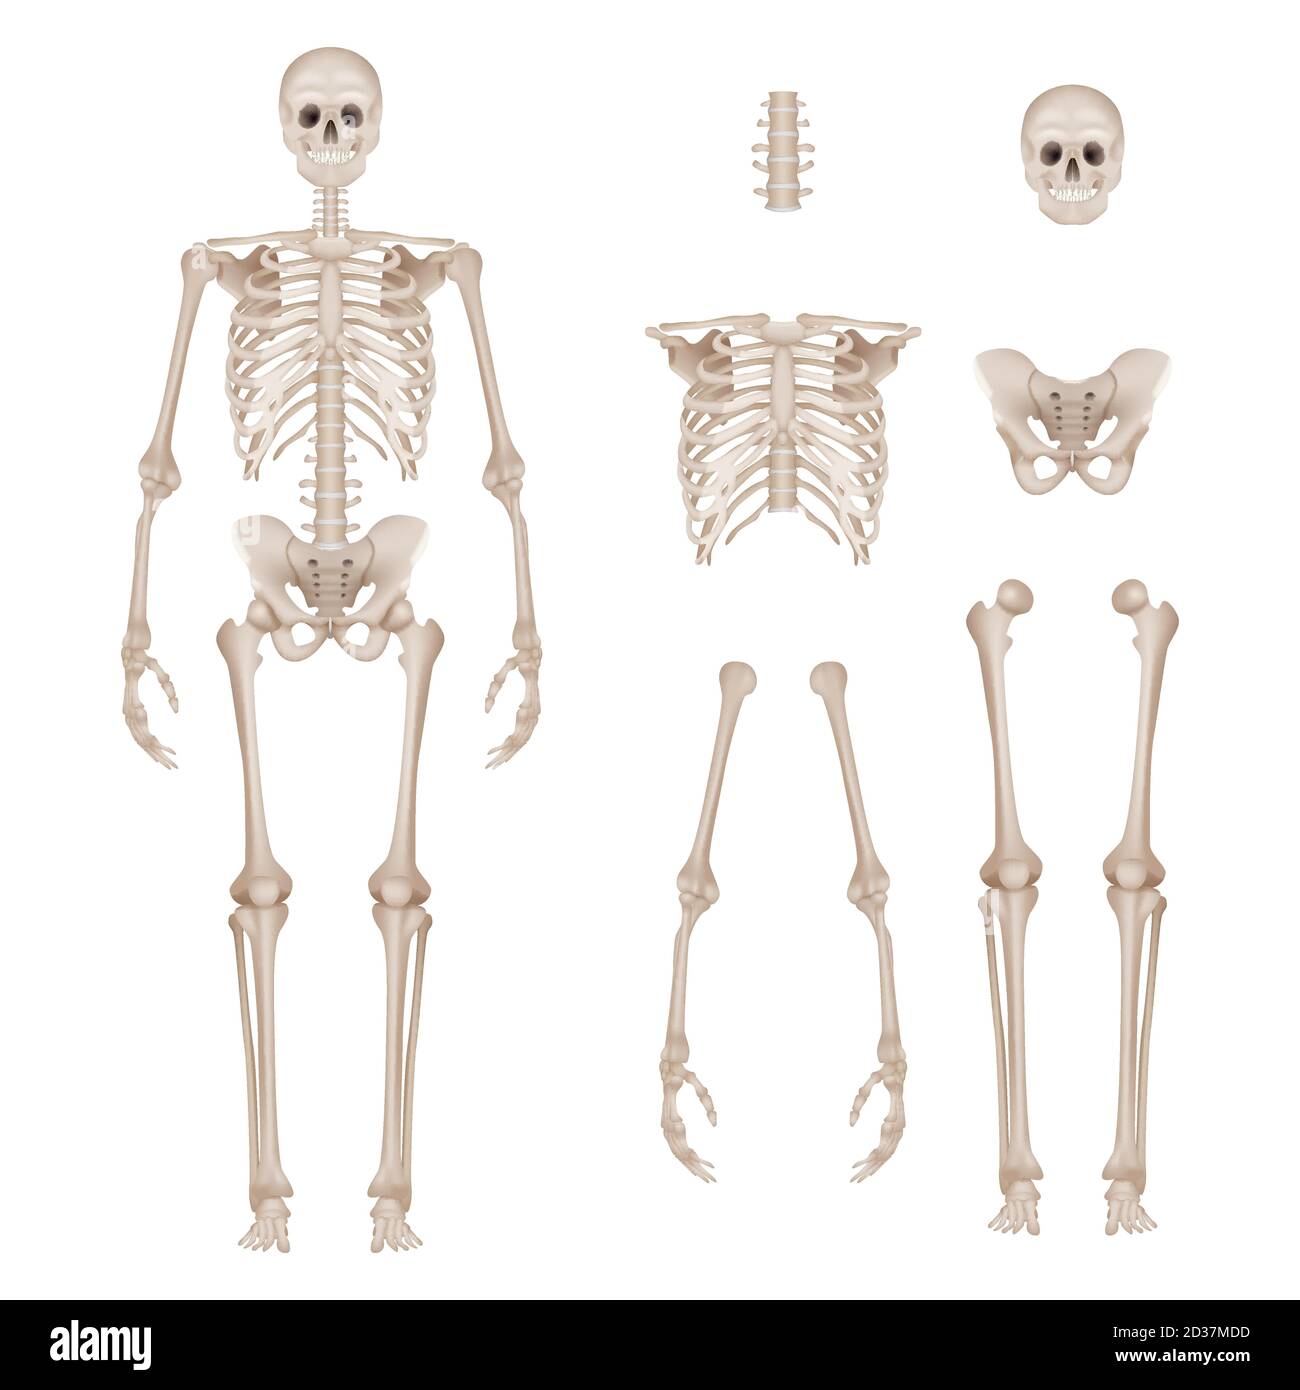 Menschliches Skelett. Körperteile Schädel Knochen Hände Fuß Wirbelsäule Anatomie detaillierte realistische Vektor-Illustration Stock Vektor